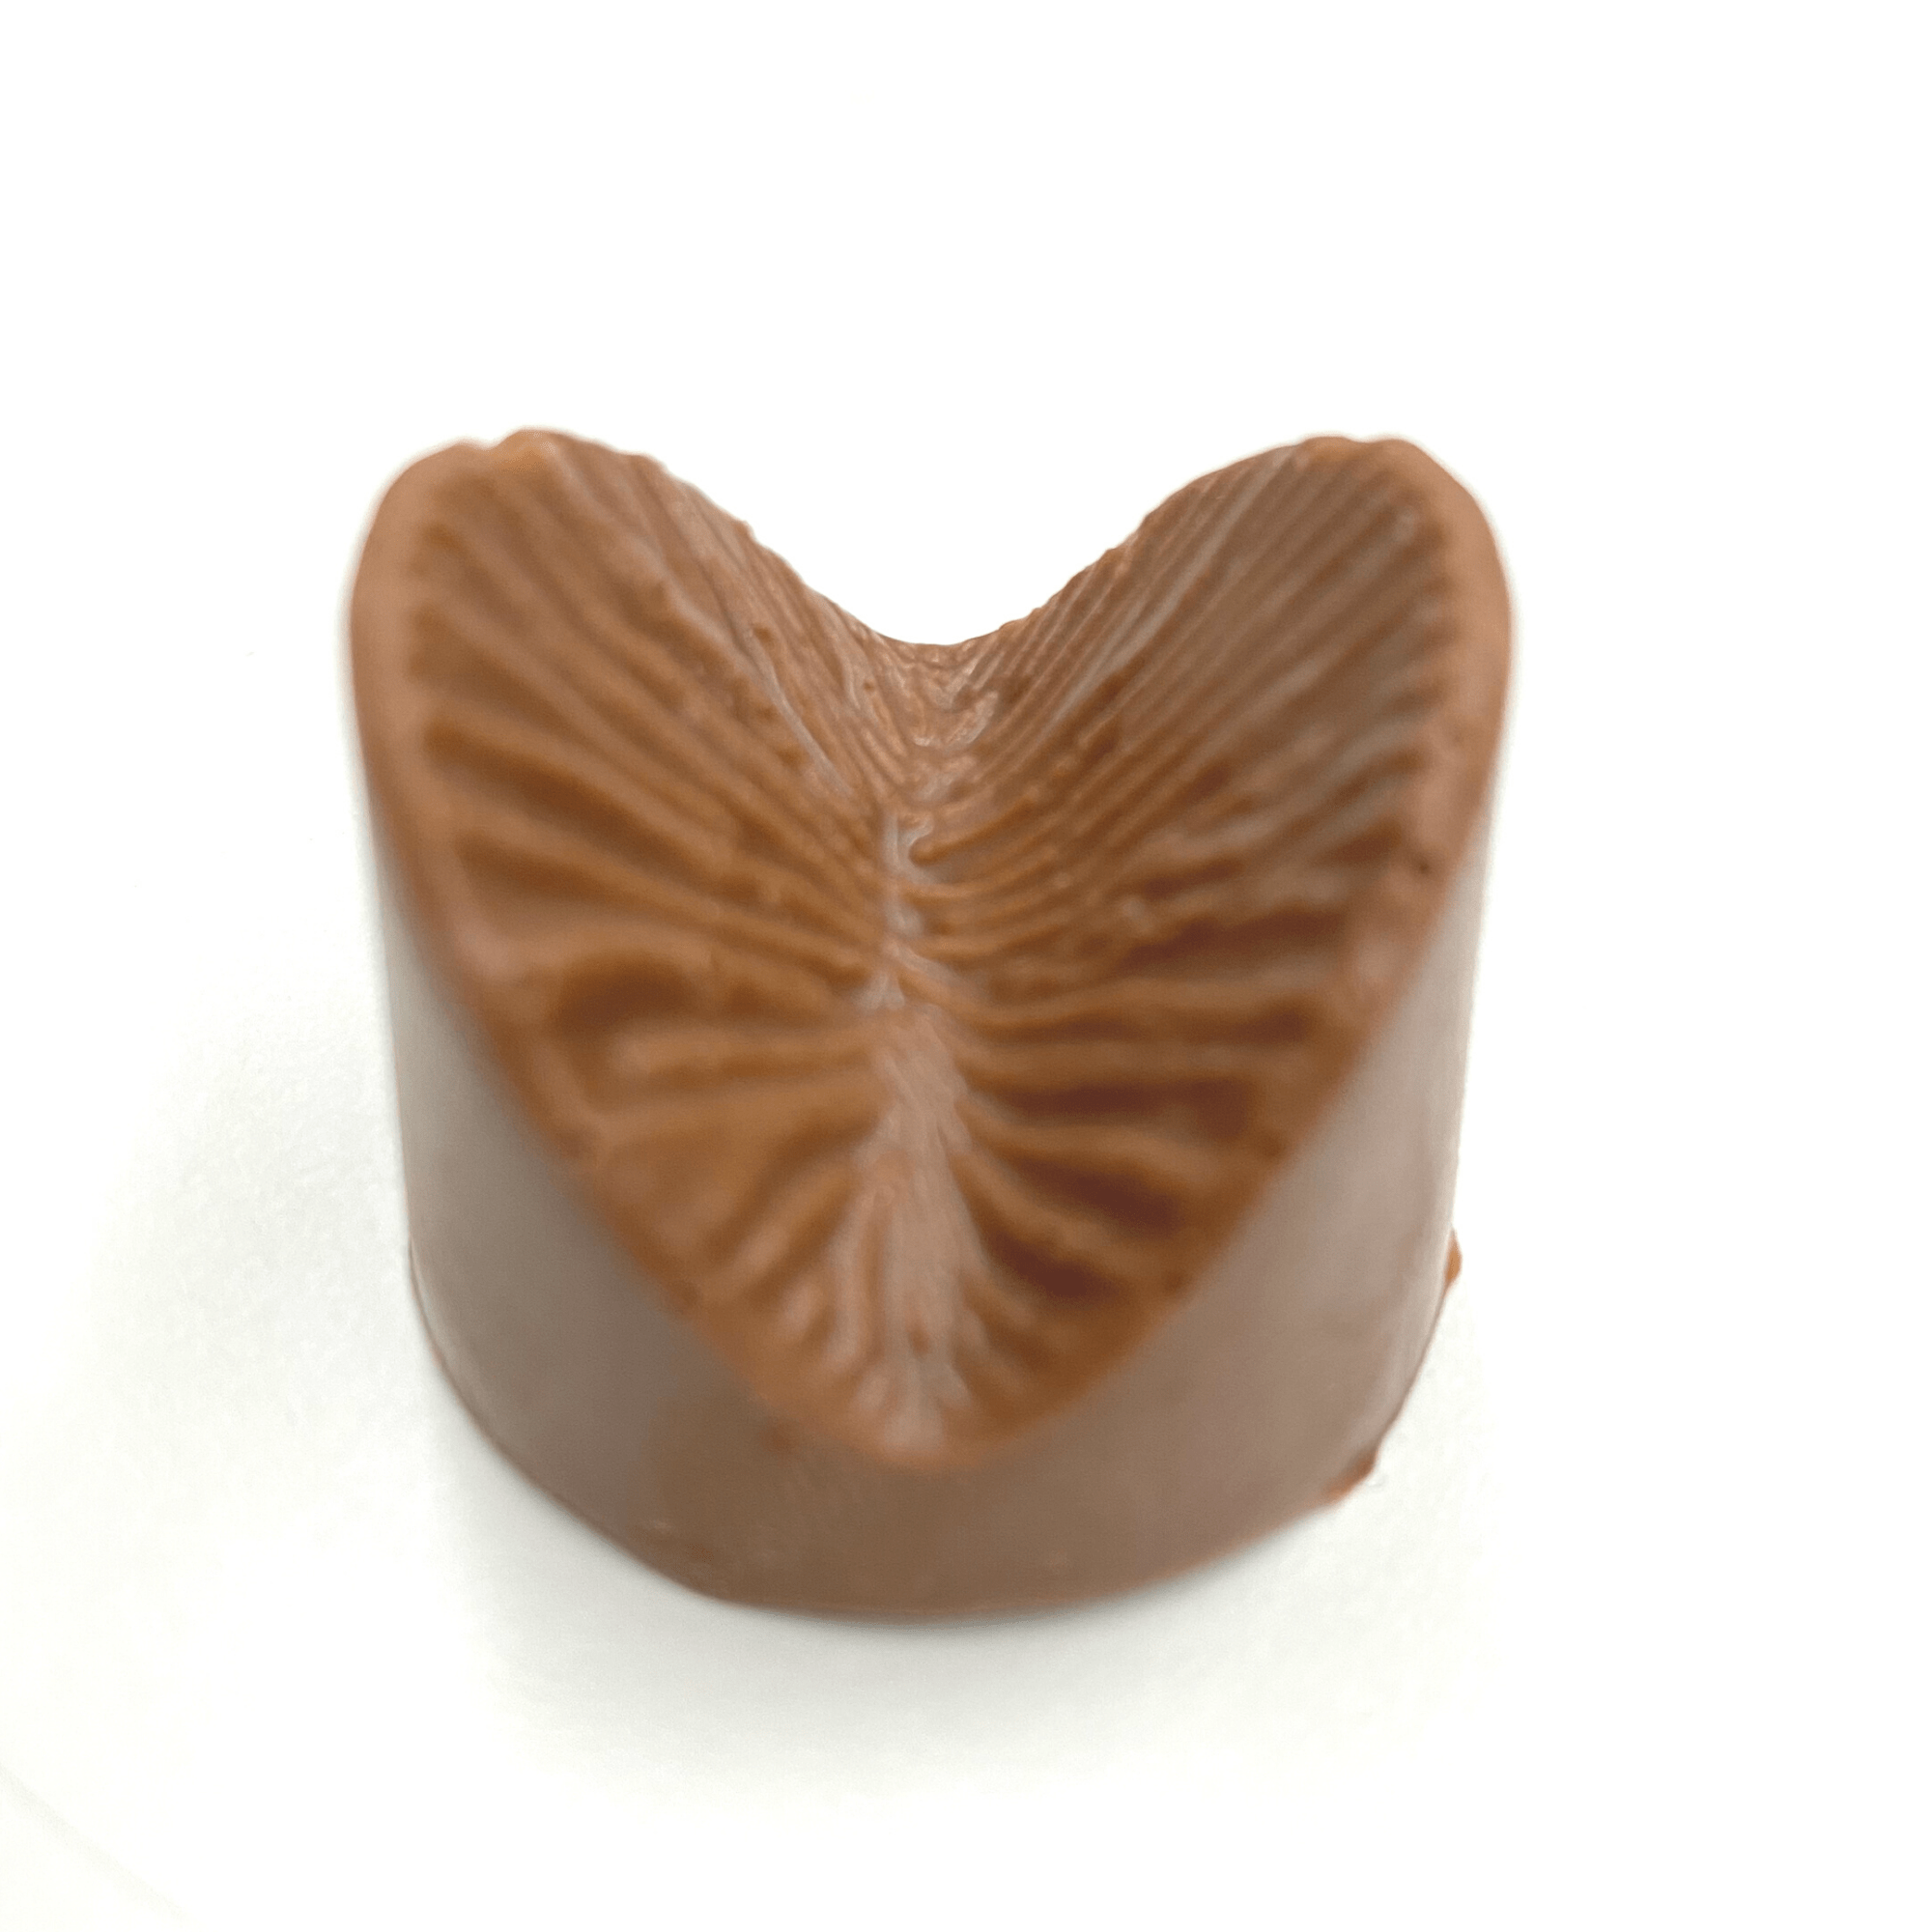 Anus Chocolat - Super Insolite